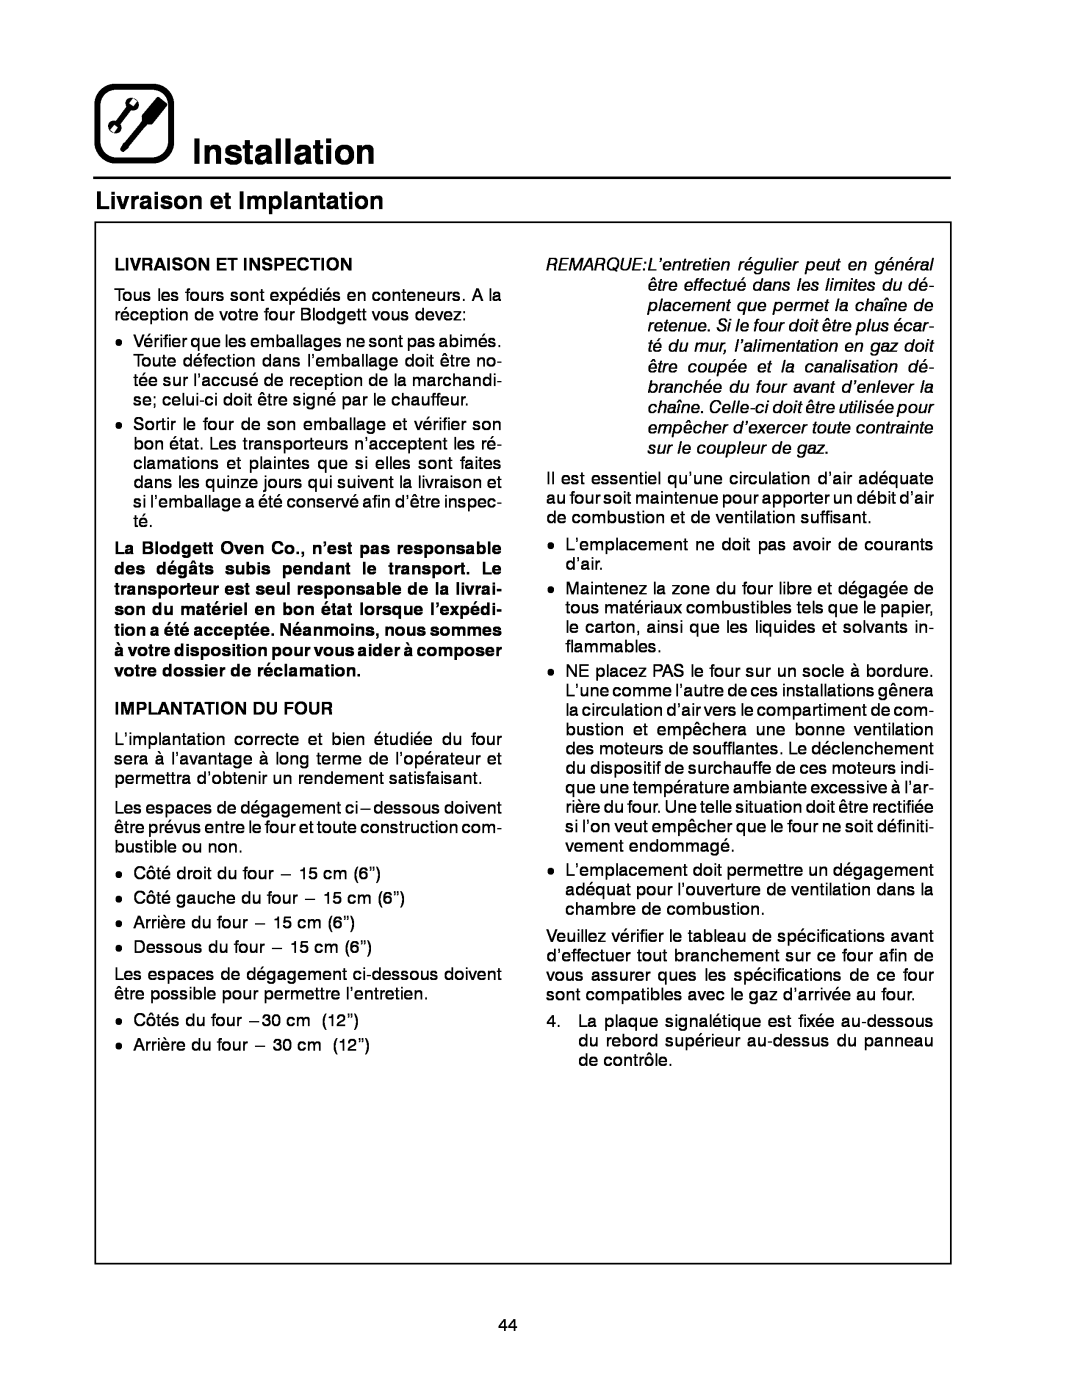 Blodgett DFG-50 manual Livraison et Implantation, Installation, Livraison Et Inspection, Implantation Du Four 